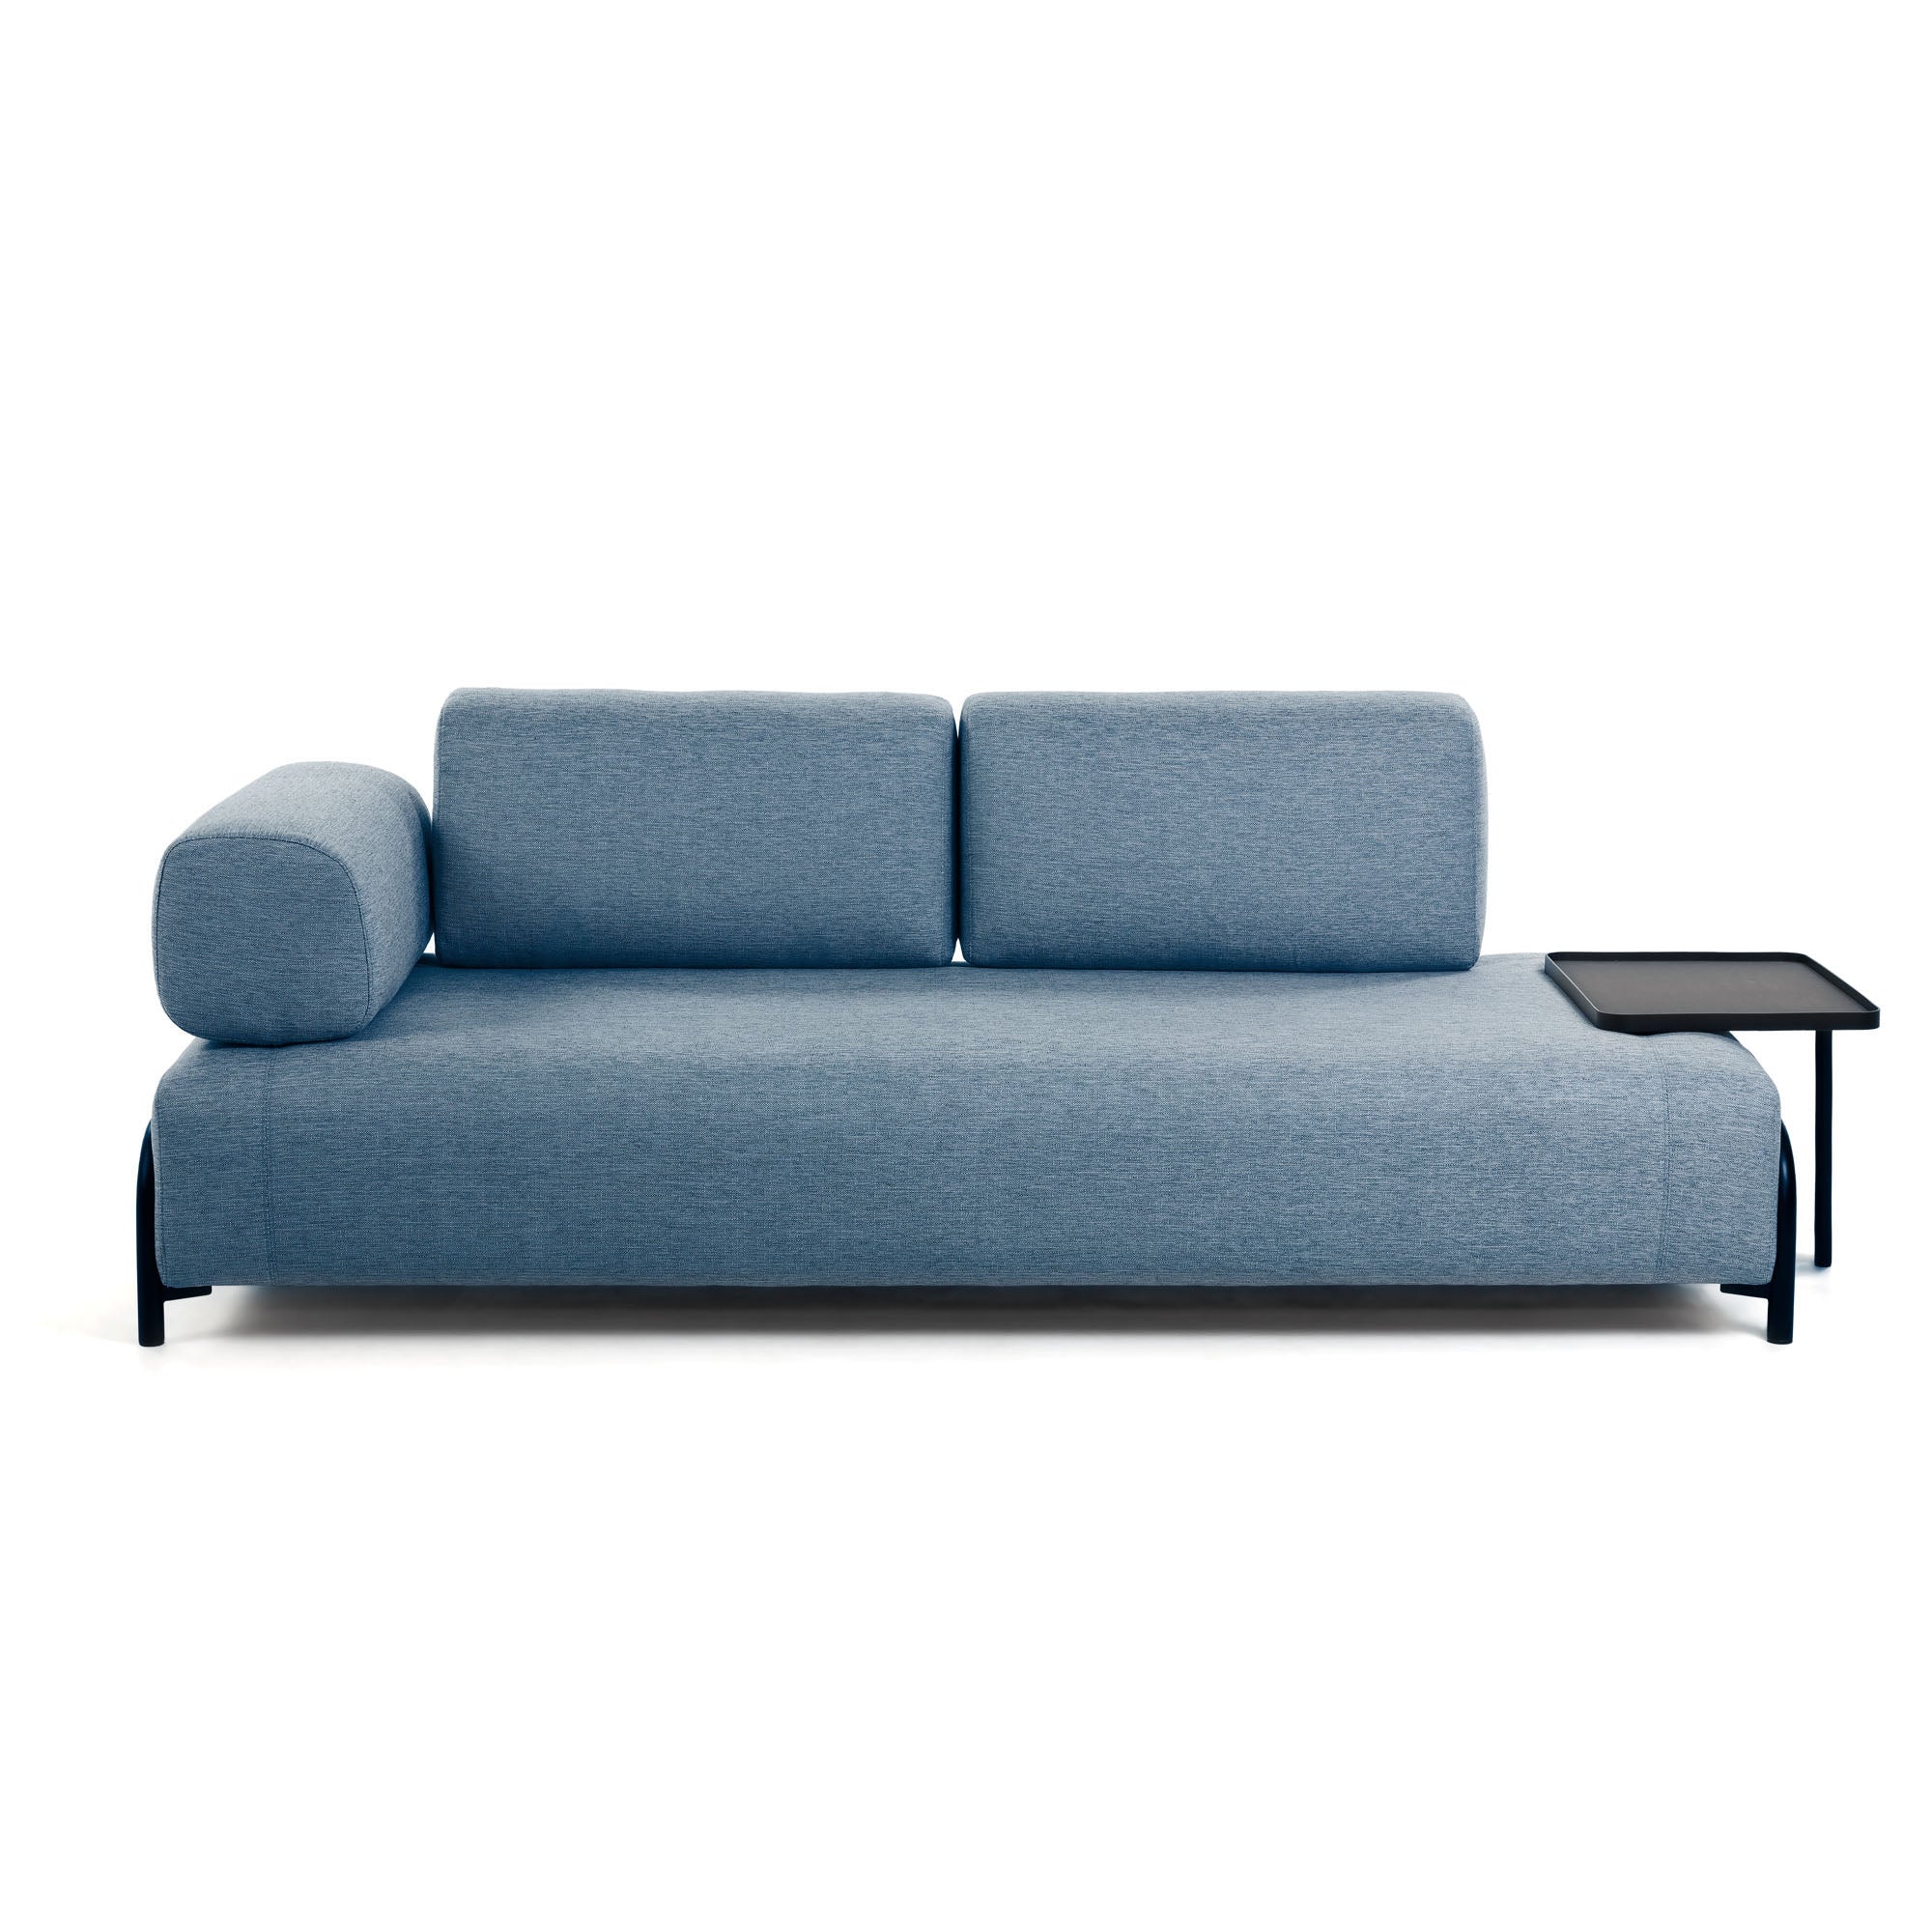 Compo 3 személyes kanapé nagy tálcával, kék színben, 252 cm